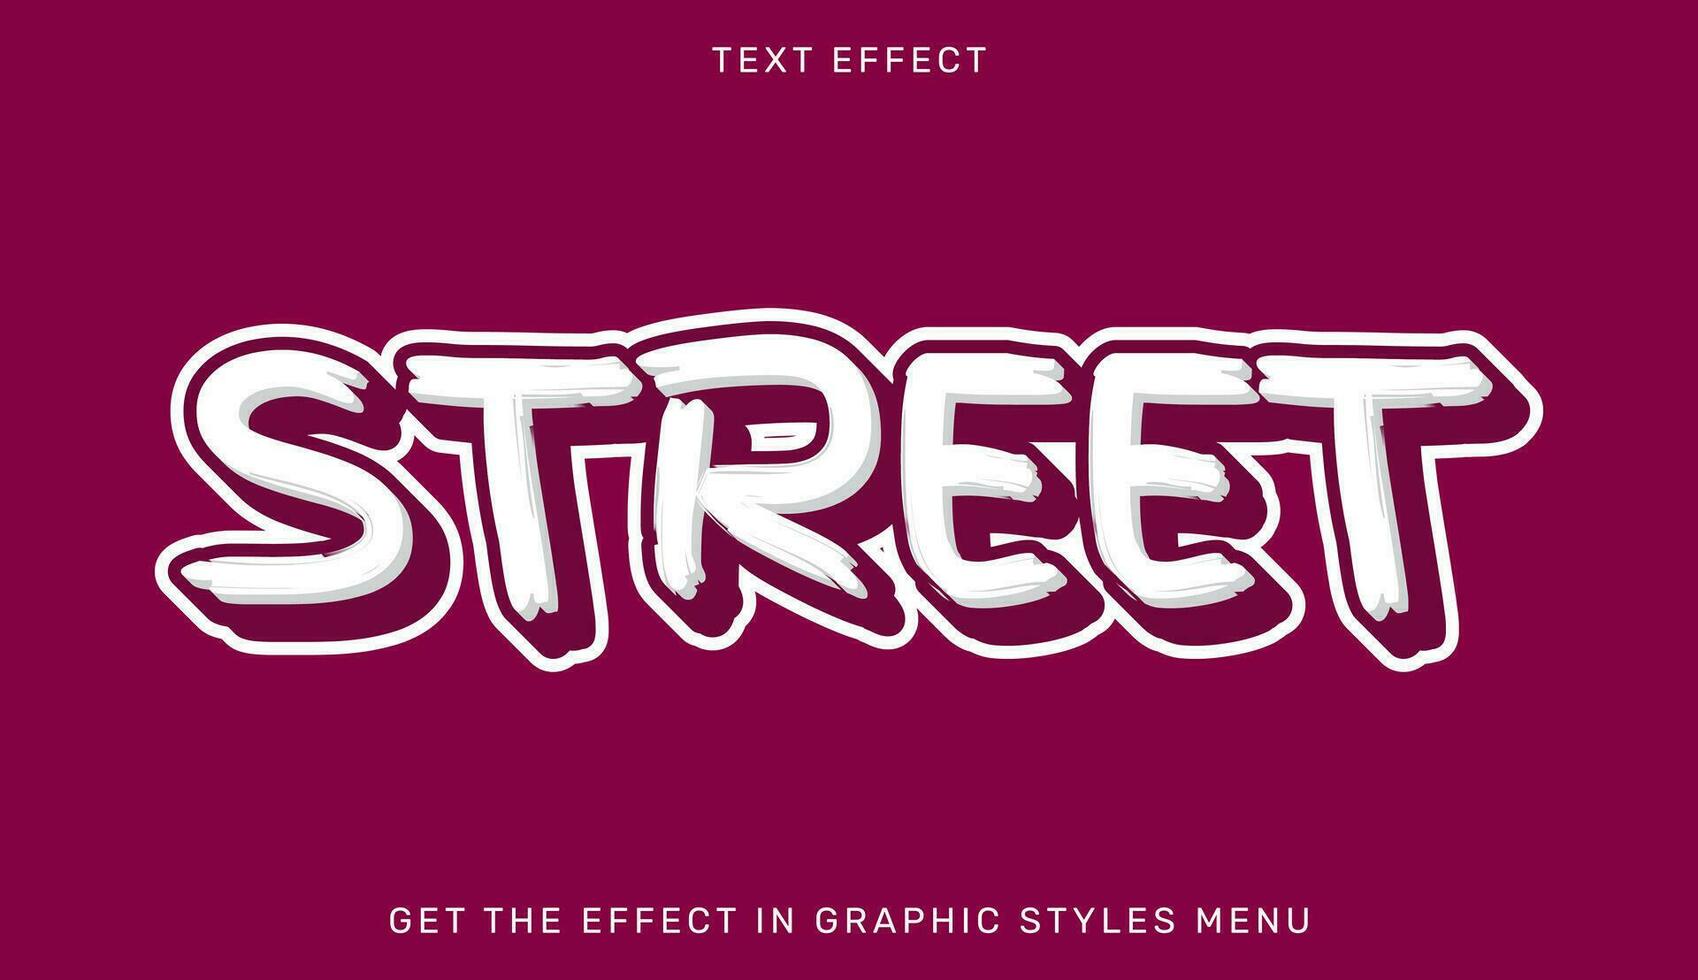 rue modifiable texte effet dans 3d style. texte emblème pour publicité, l'image de marque, affaires logo vecteur